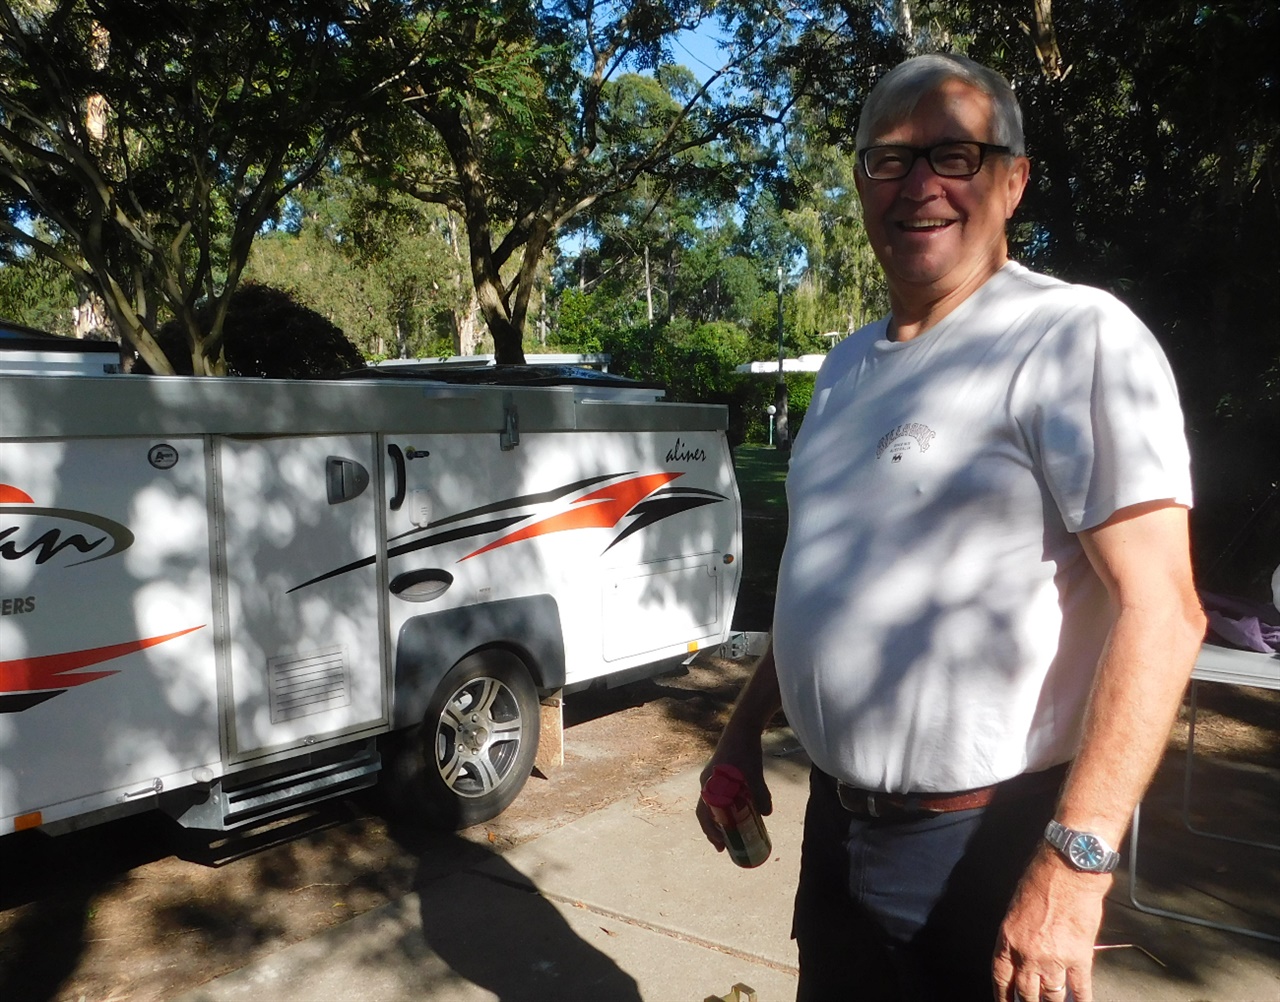 큰 캐러밴을 가지고 호주 전역을 여행한다는 켄(Ken), 나에게 여행에 대해 도움을 준 사람이다.